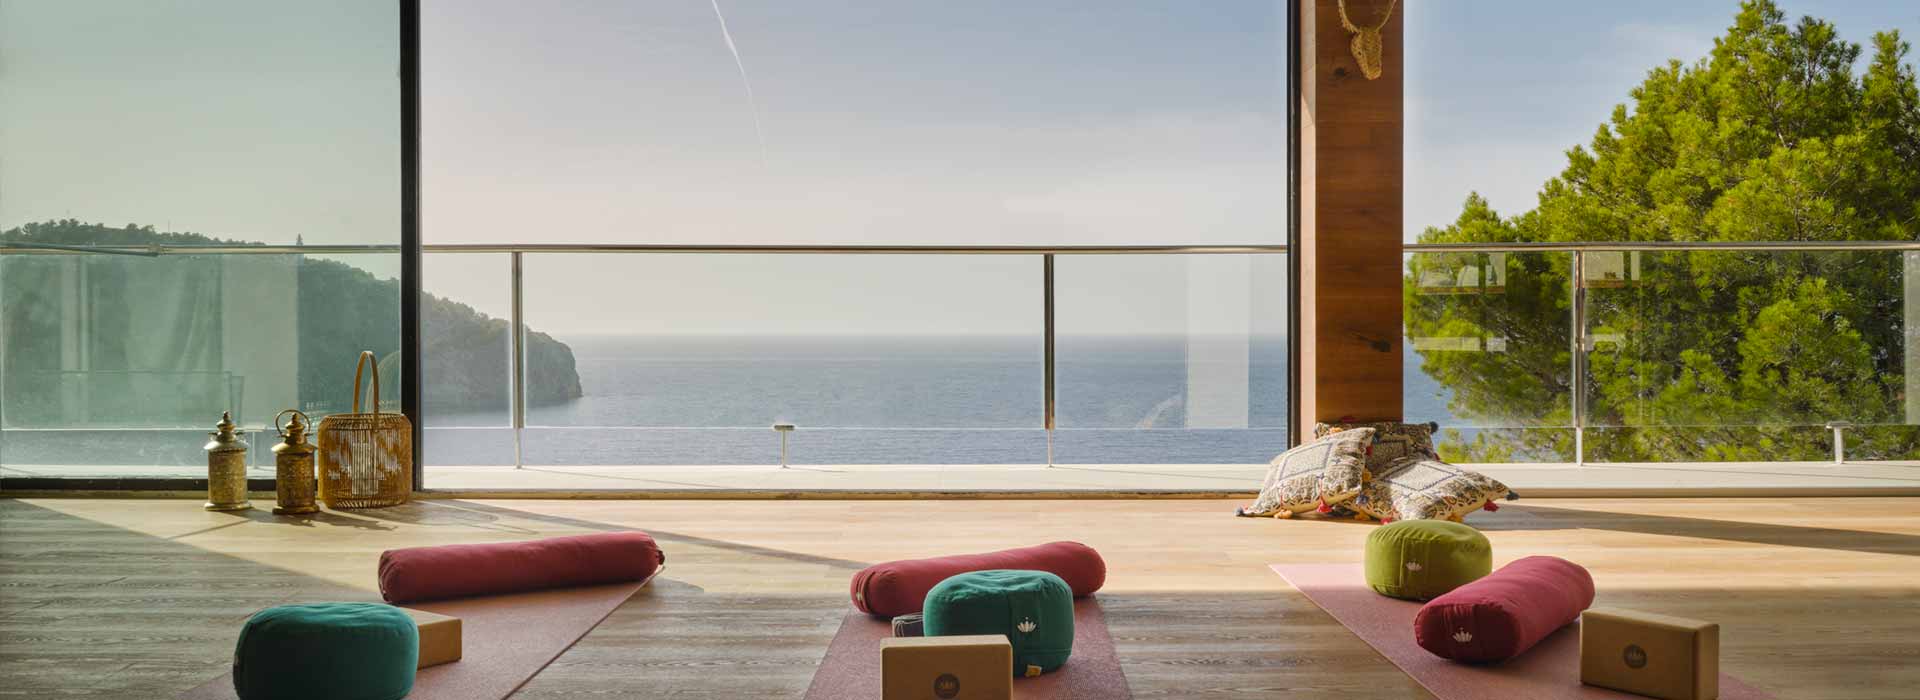 Blick aus dem mit Holzdielen ausgelegten Yoga Soul Room durch seine großen bodentiefen Panoramafenster auf das Meer